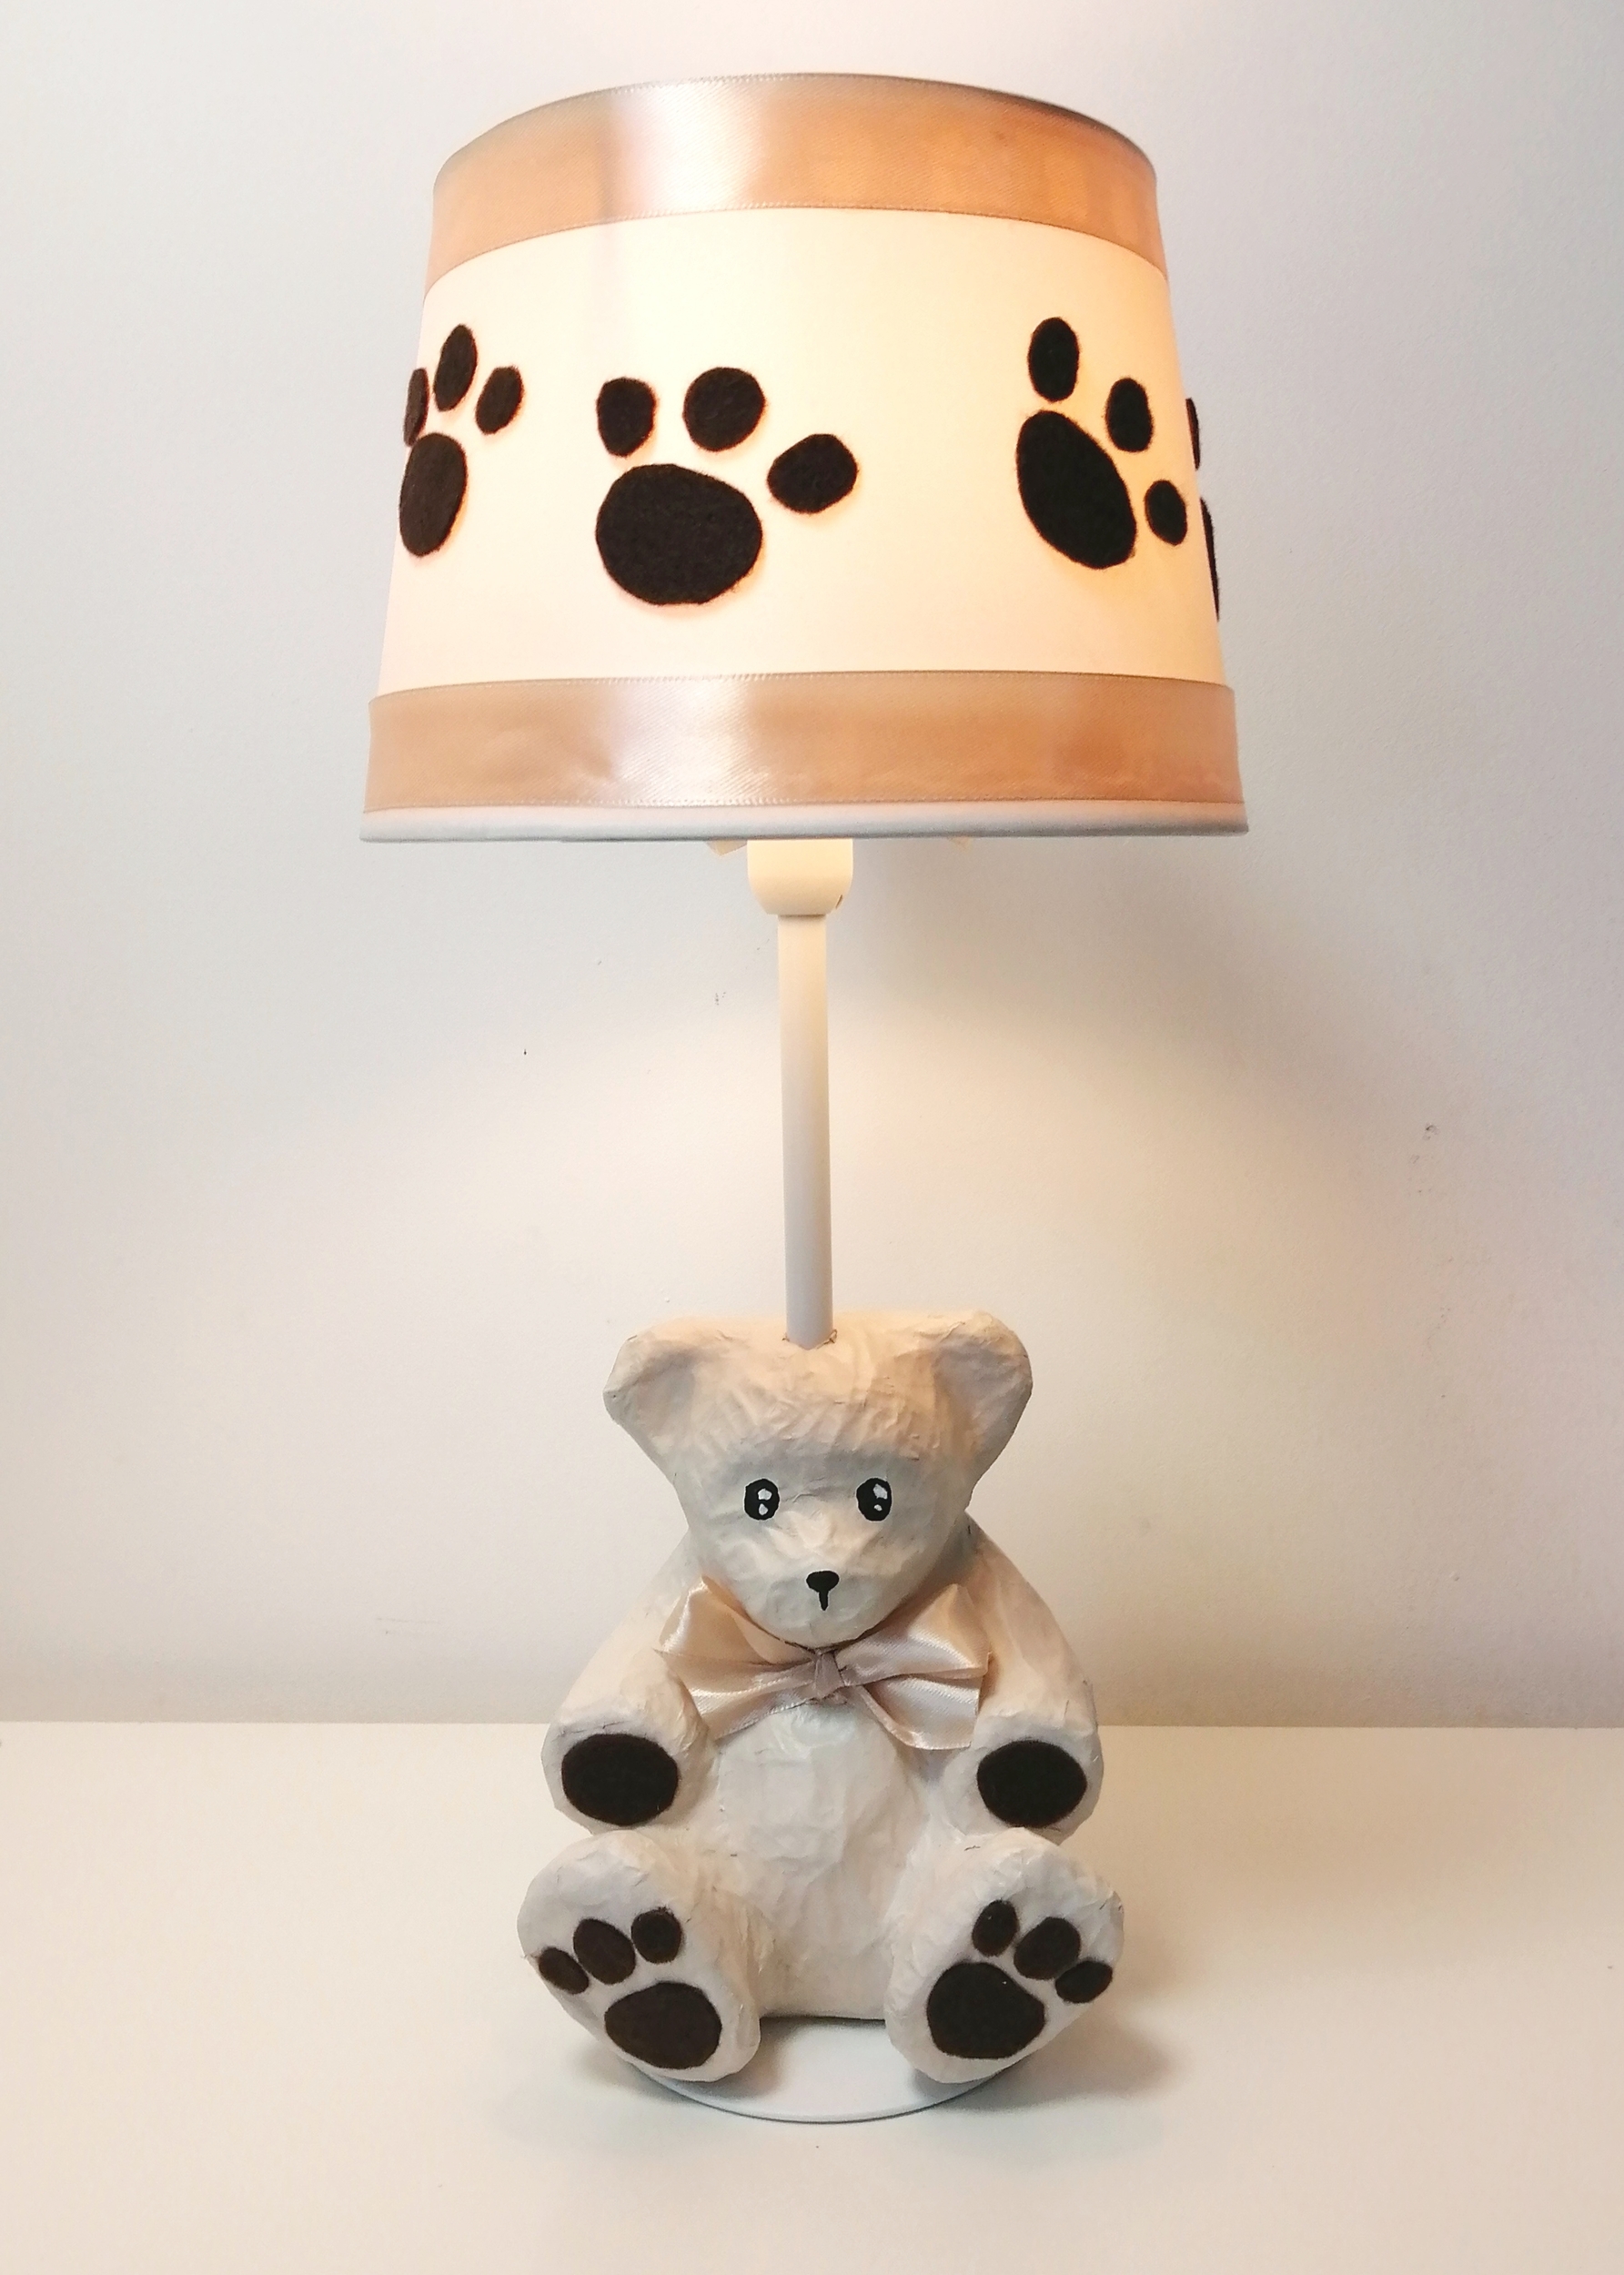 lampe-chevet-enfant-bebe-ours-marron-chocolat-beige-noisette-forme-ours-decoration-chambre-4